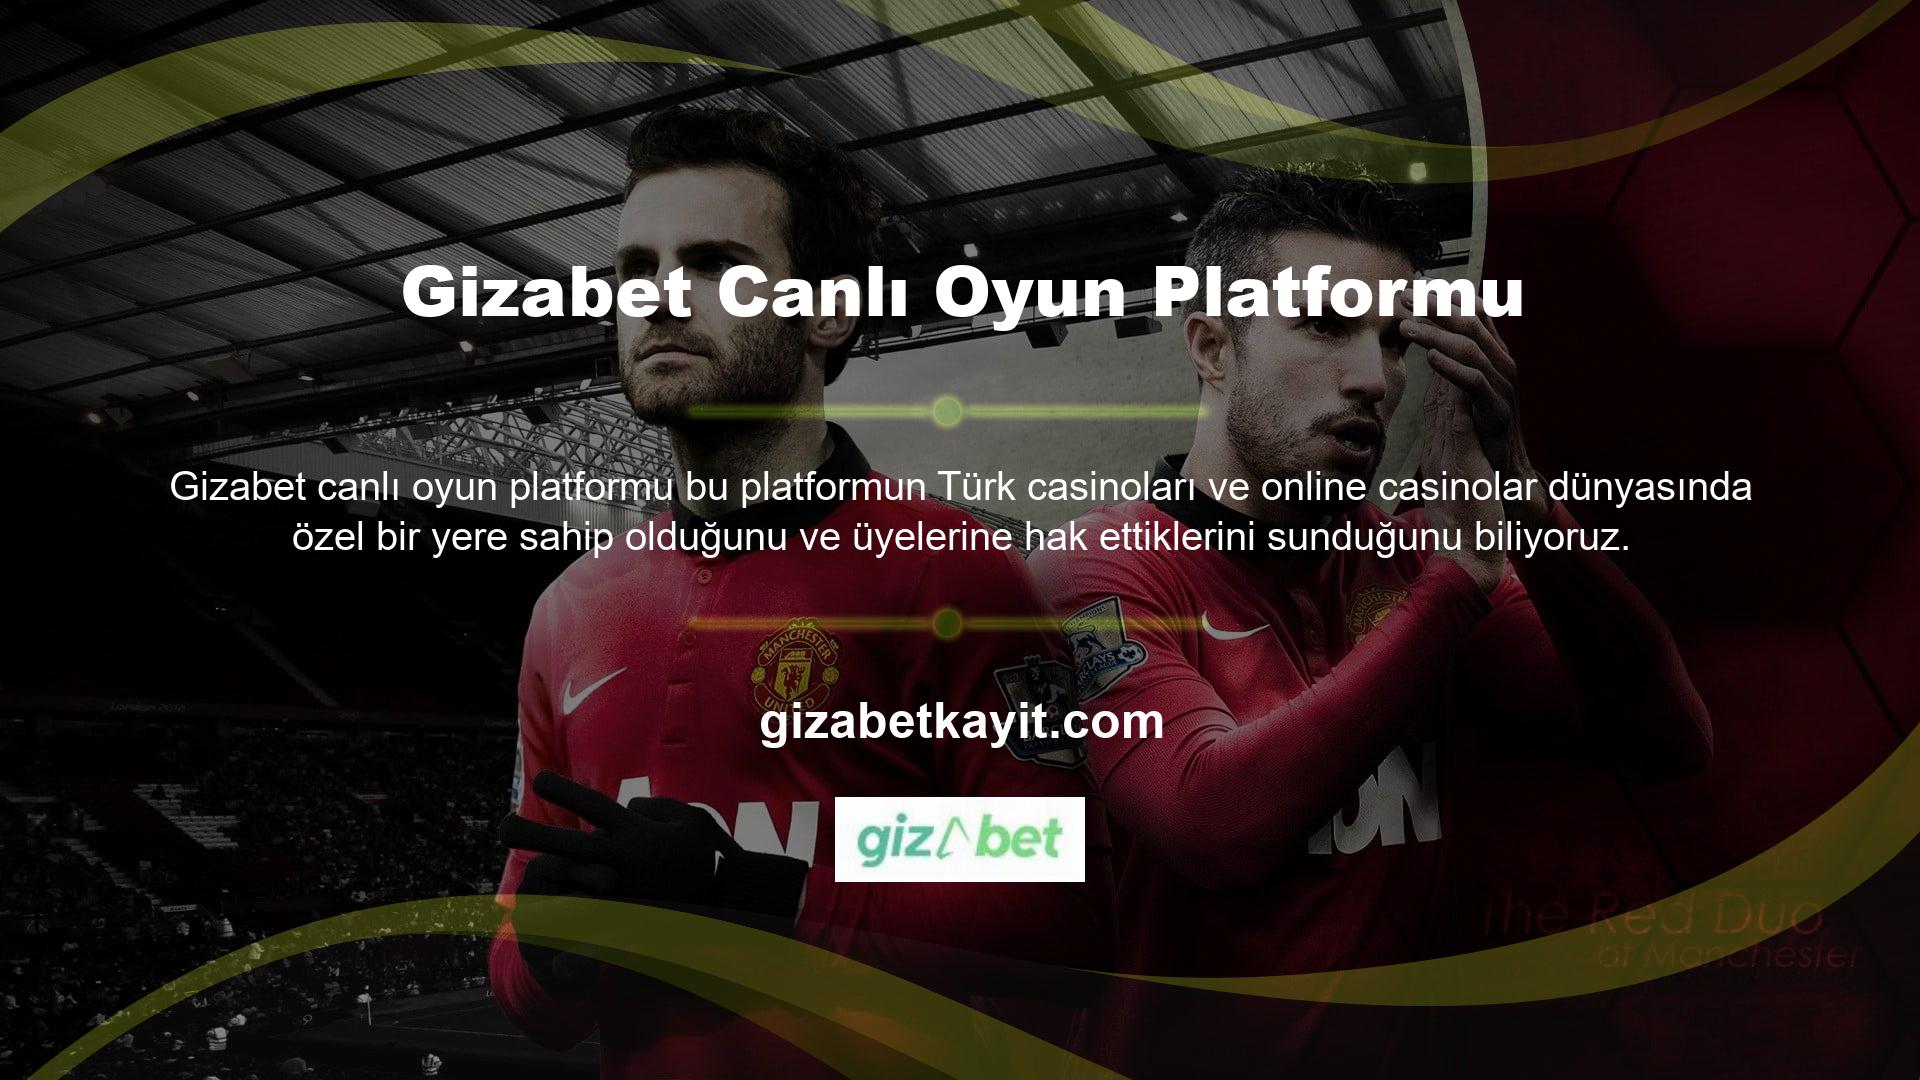 Gizabet canlı oyun platformu, Türkiye'nin sunduğu en ucuz çevrimiçi bahis ve casino sağlayıcılarından biridir